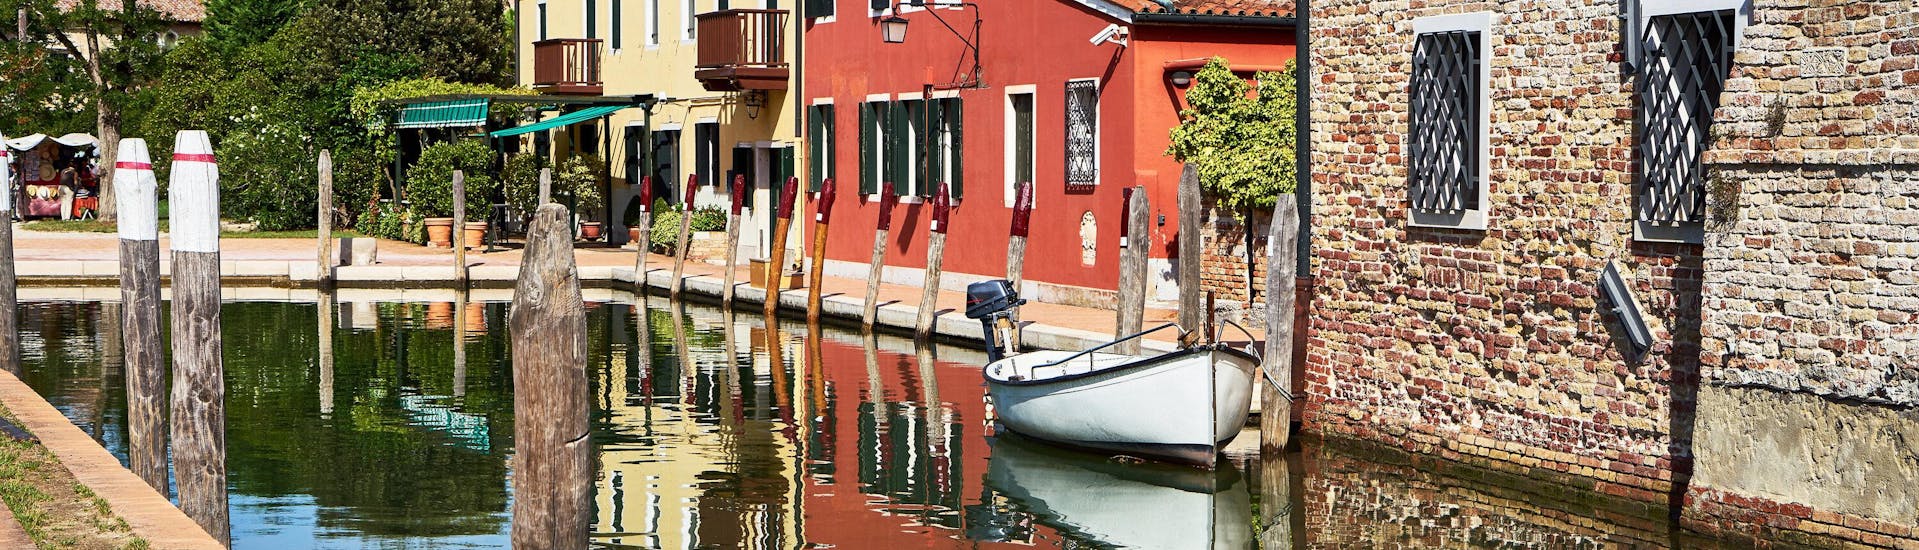 Ein Boot im Kanal während einer Bootsfahrt nach Torcello.